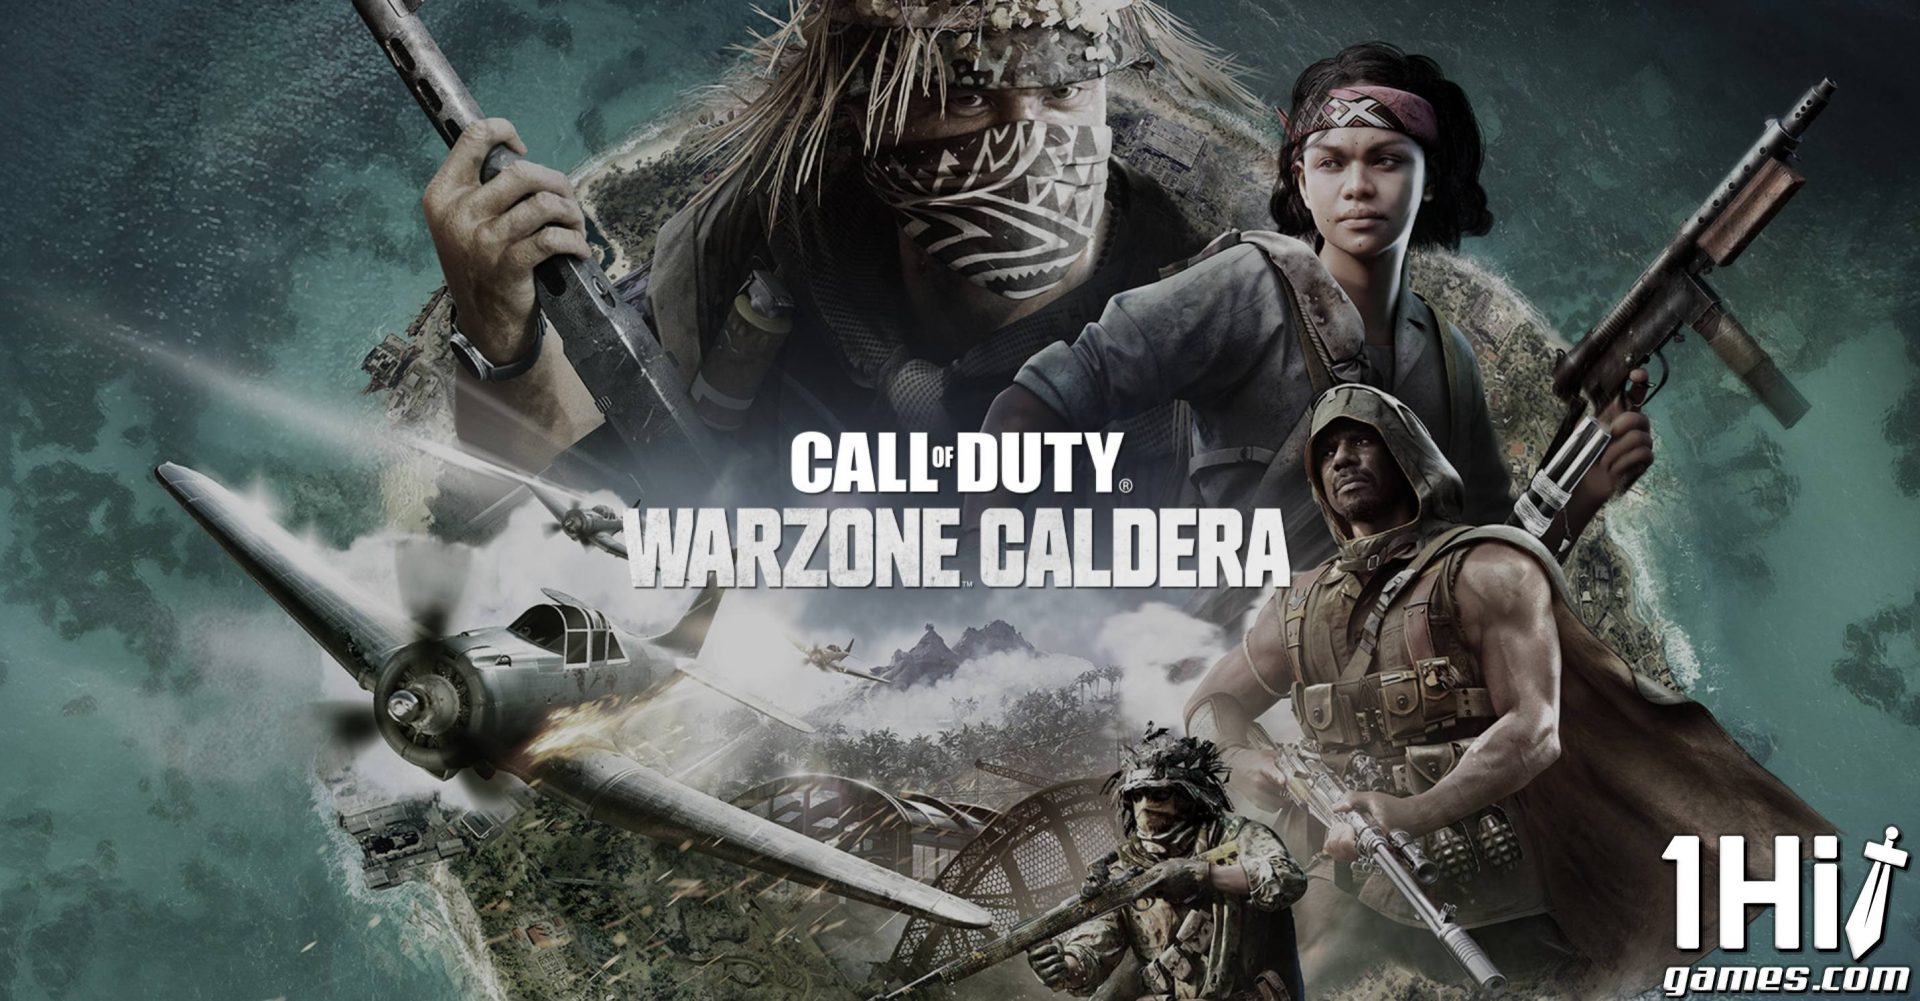  Call of Duty: Warzone Caldera será encerrado